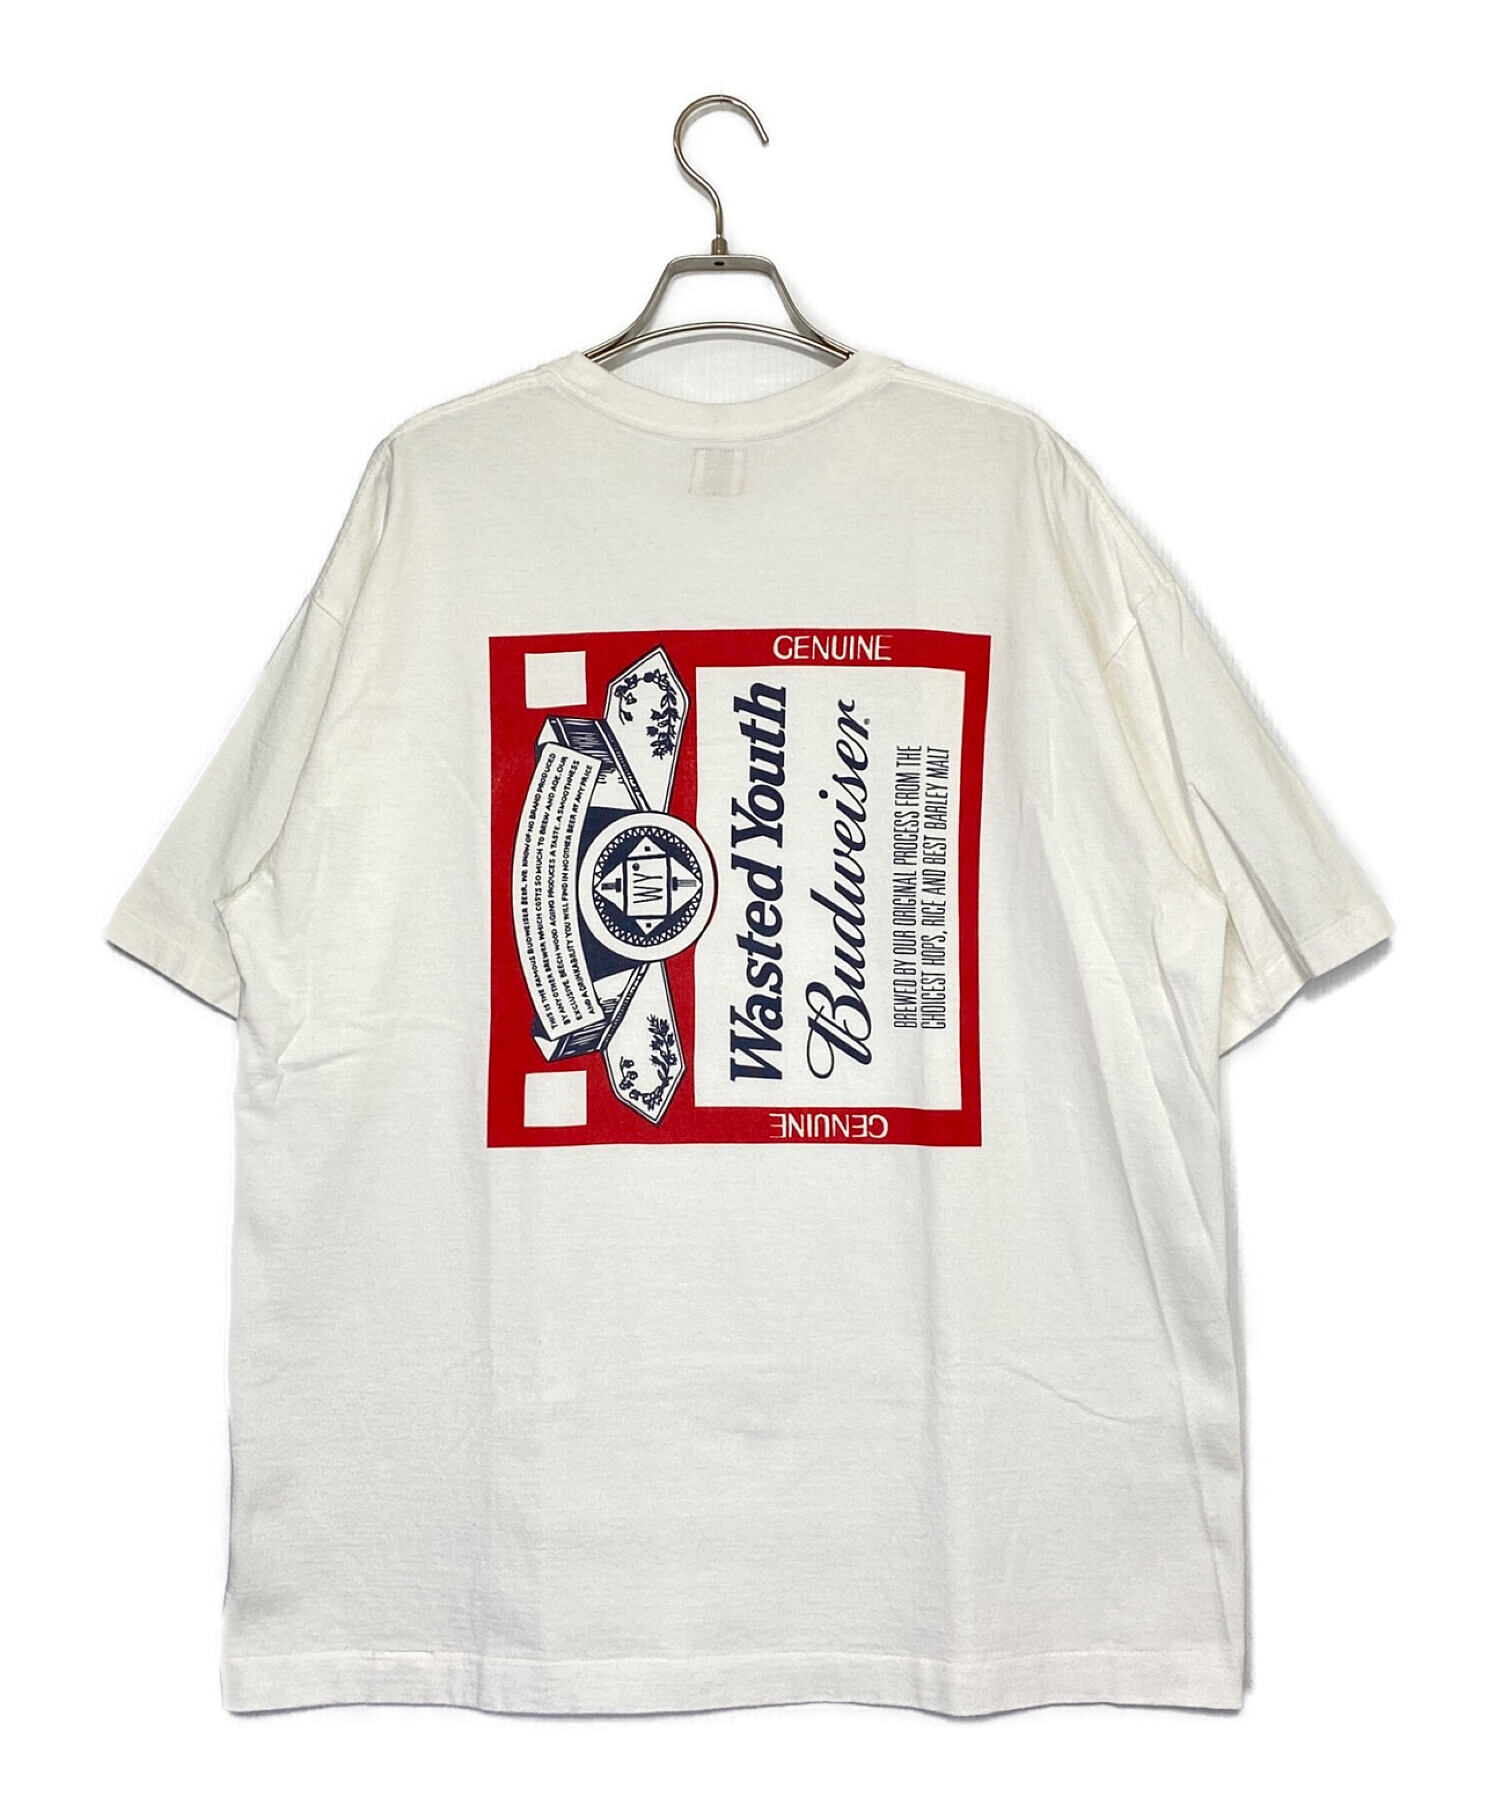 WASTED YOUTH (ウェイステッド ユース) Tシャツ ホワイト サイズ:XL